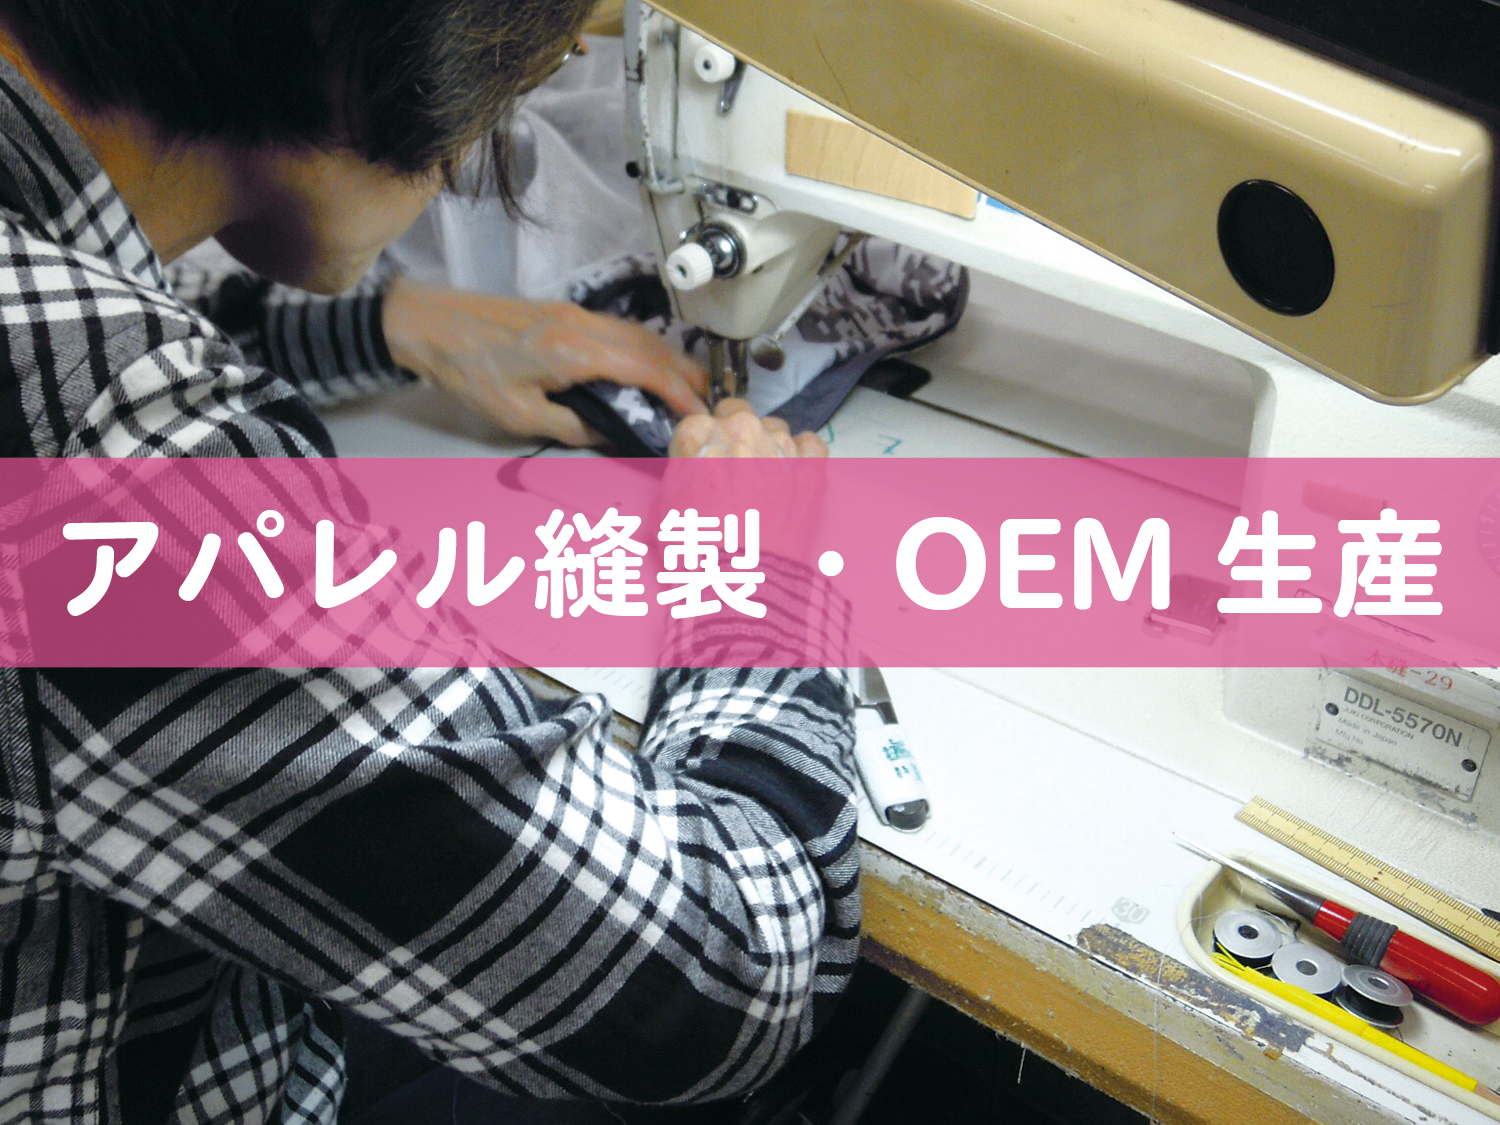 アパレル縫製・OEM生産